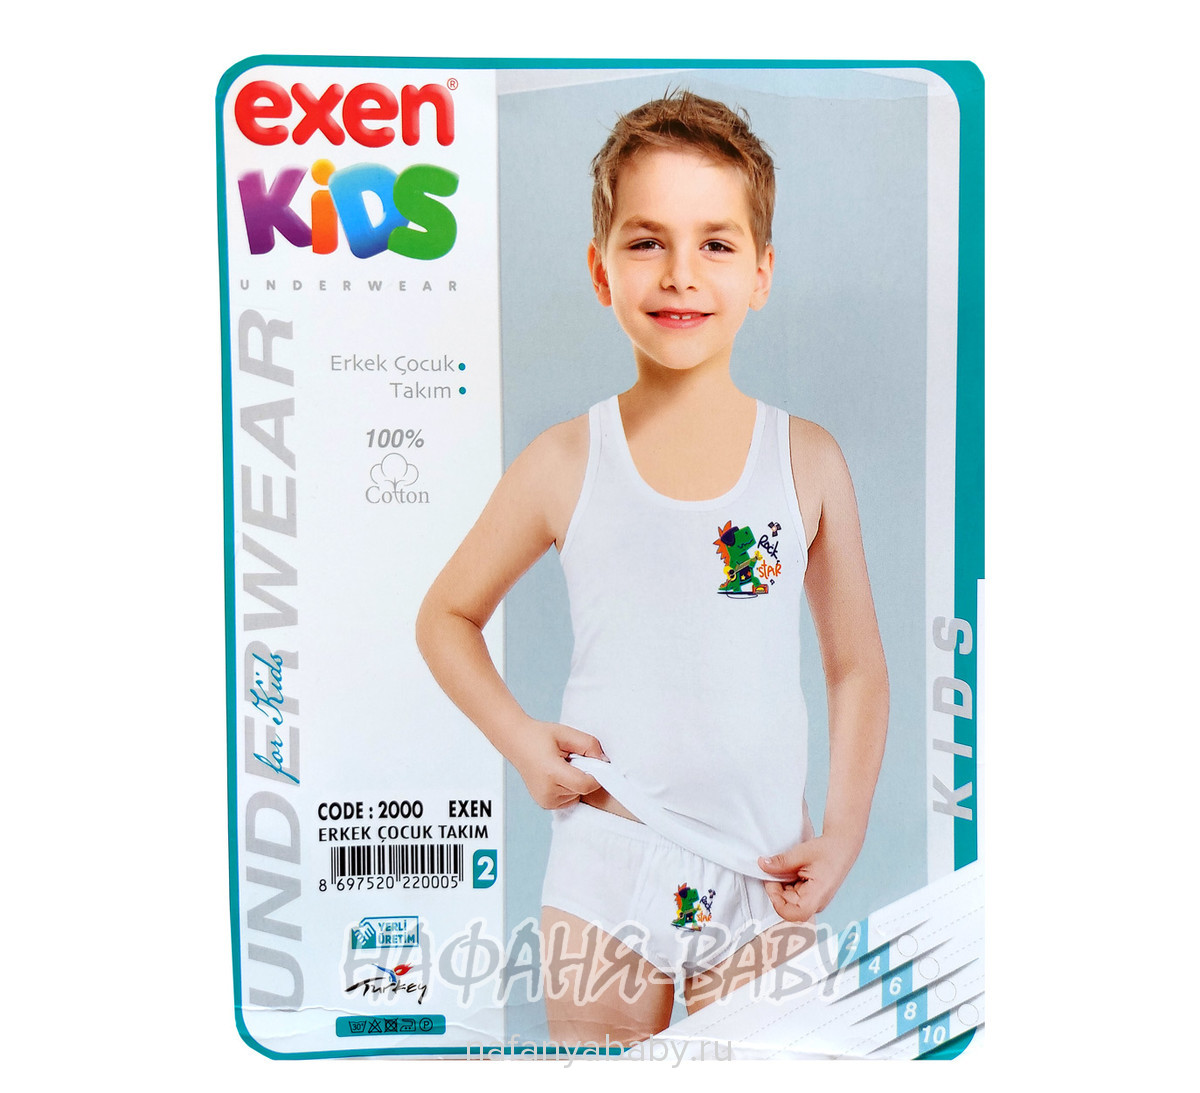 Комплект (майка + трусы) для мальчика EXEN Kids, купить в интернет магазине Нафаня. арт: 2000-2.